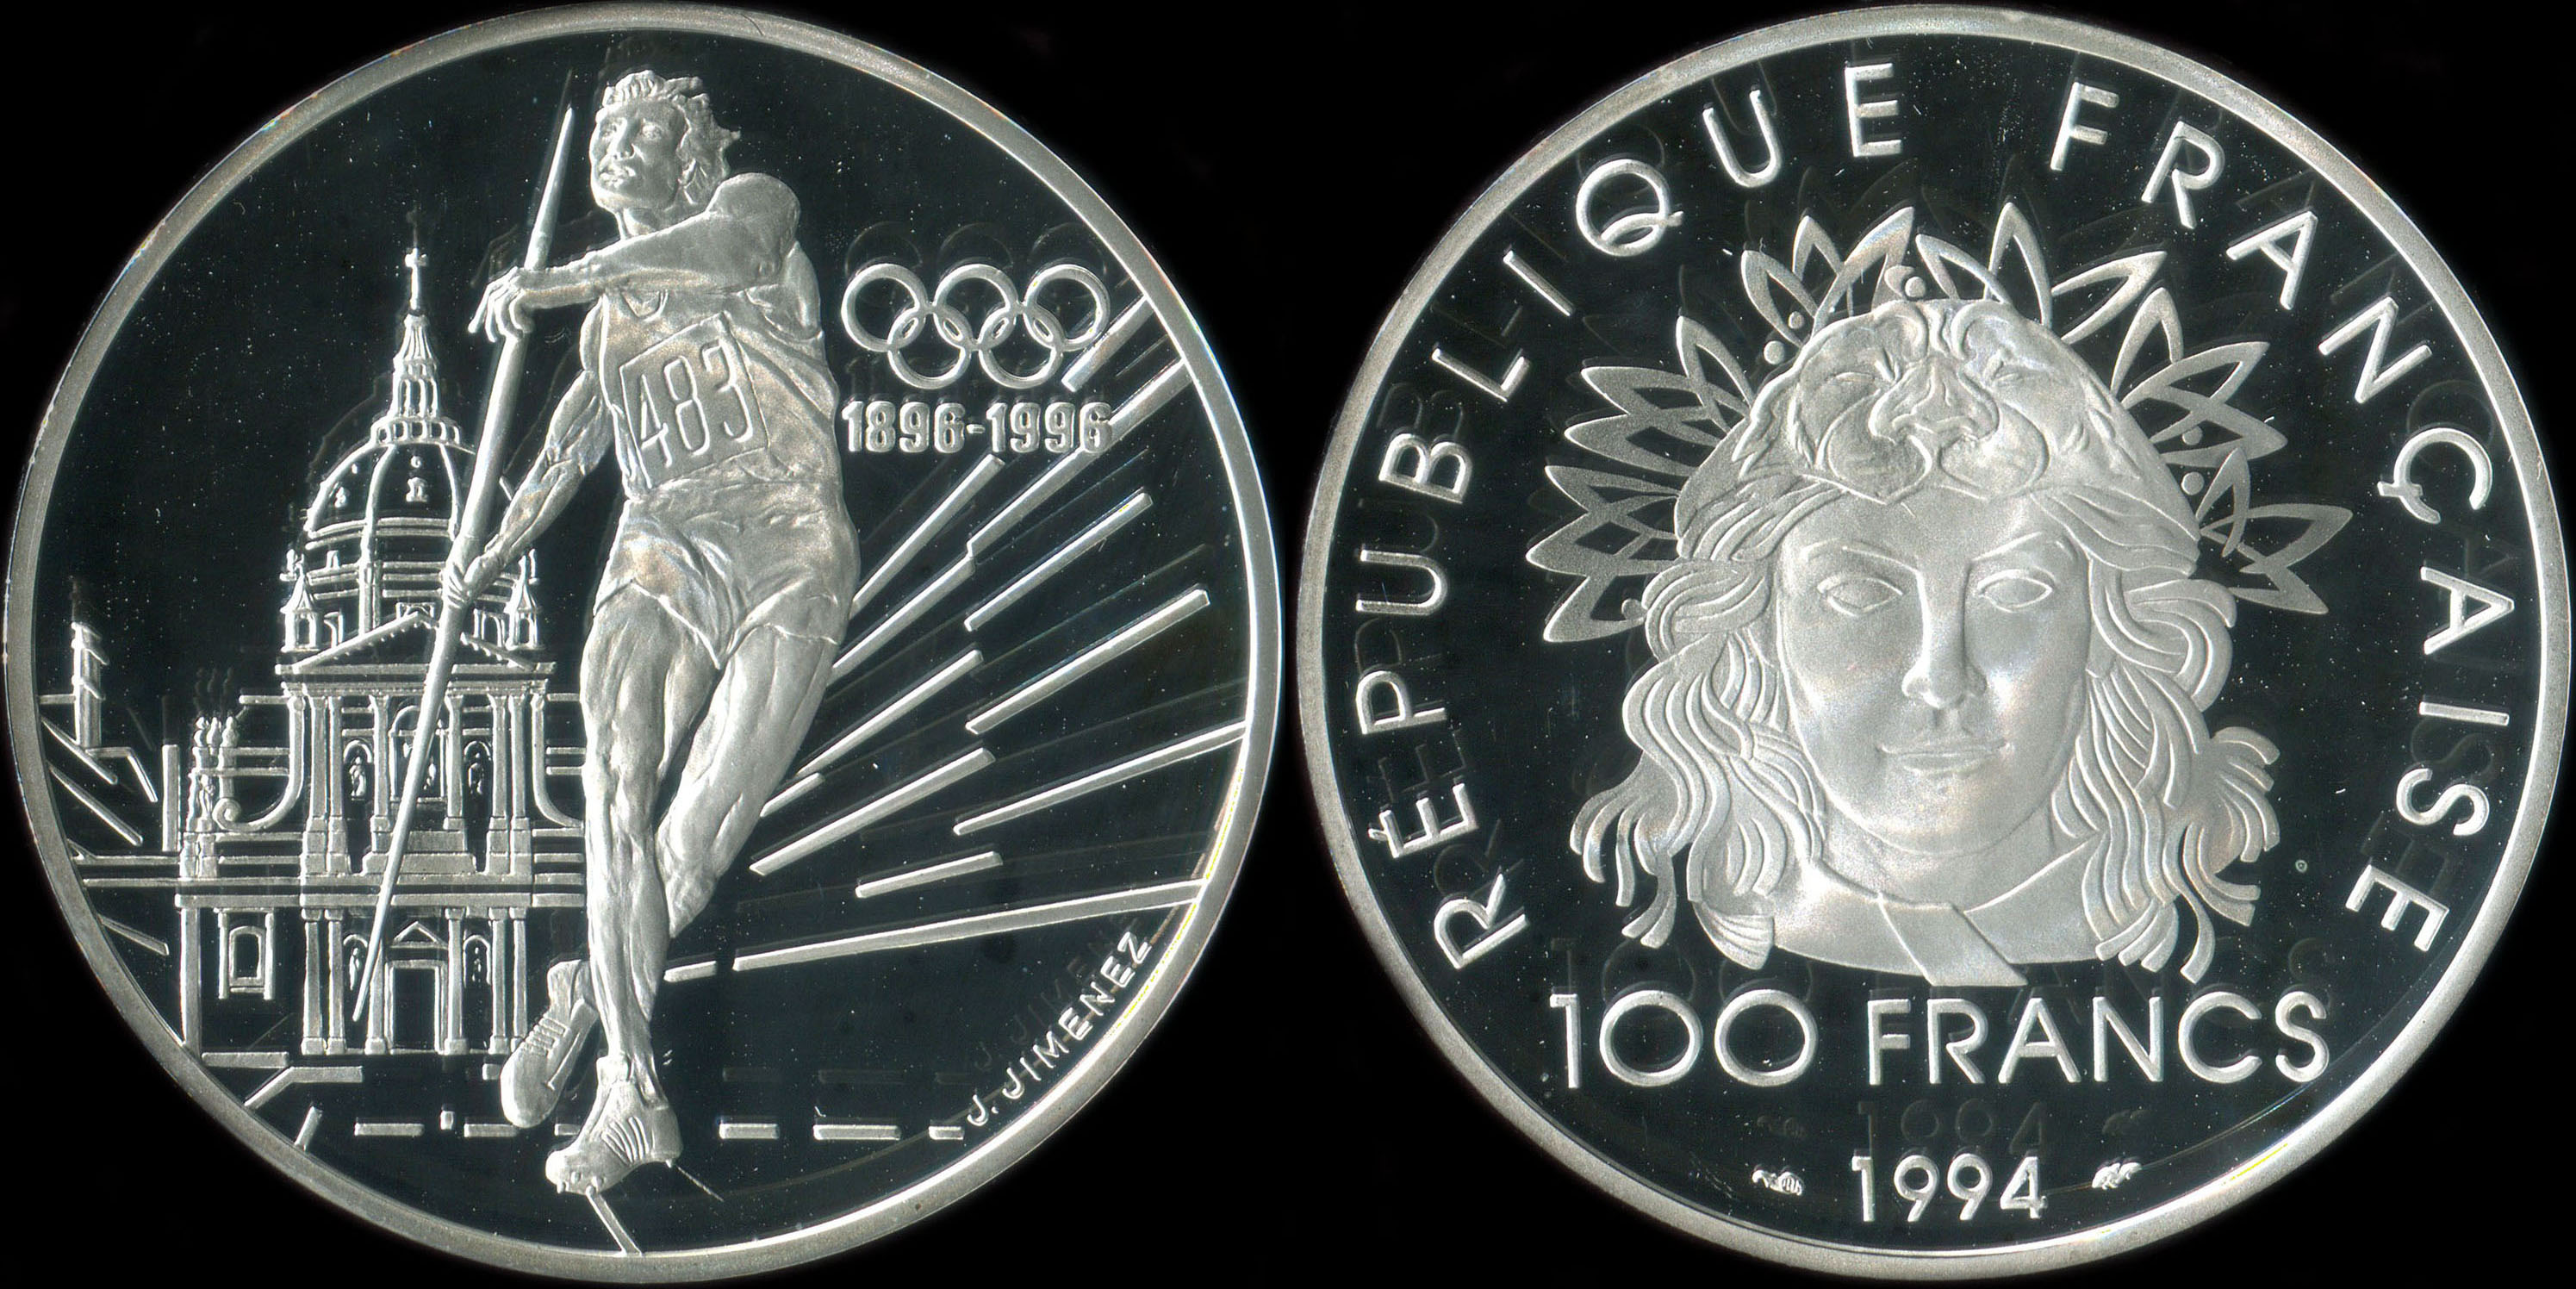 Pice de 100 francs 1994 - Centenaire du rtablissement de l'Olympisme - Lancer de javelot